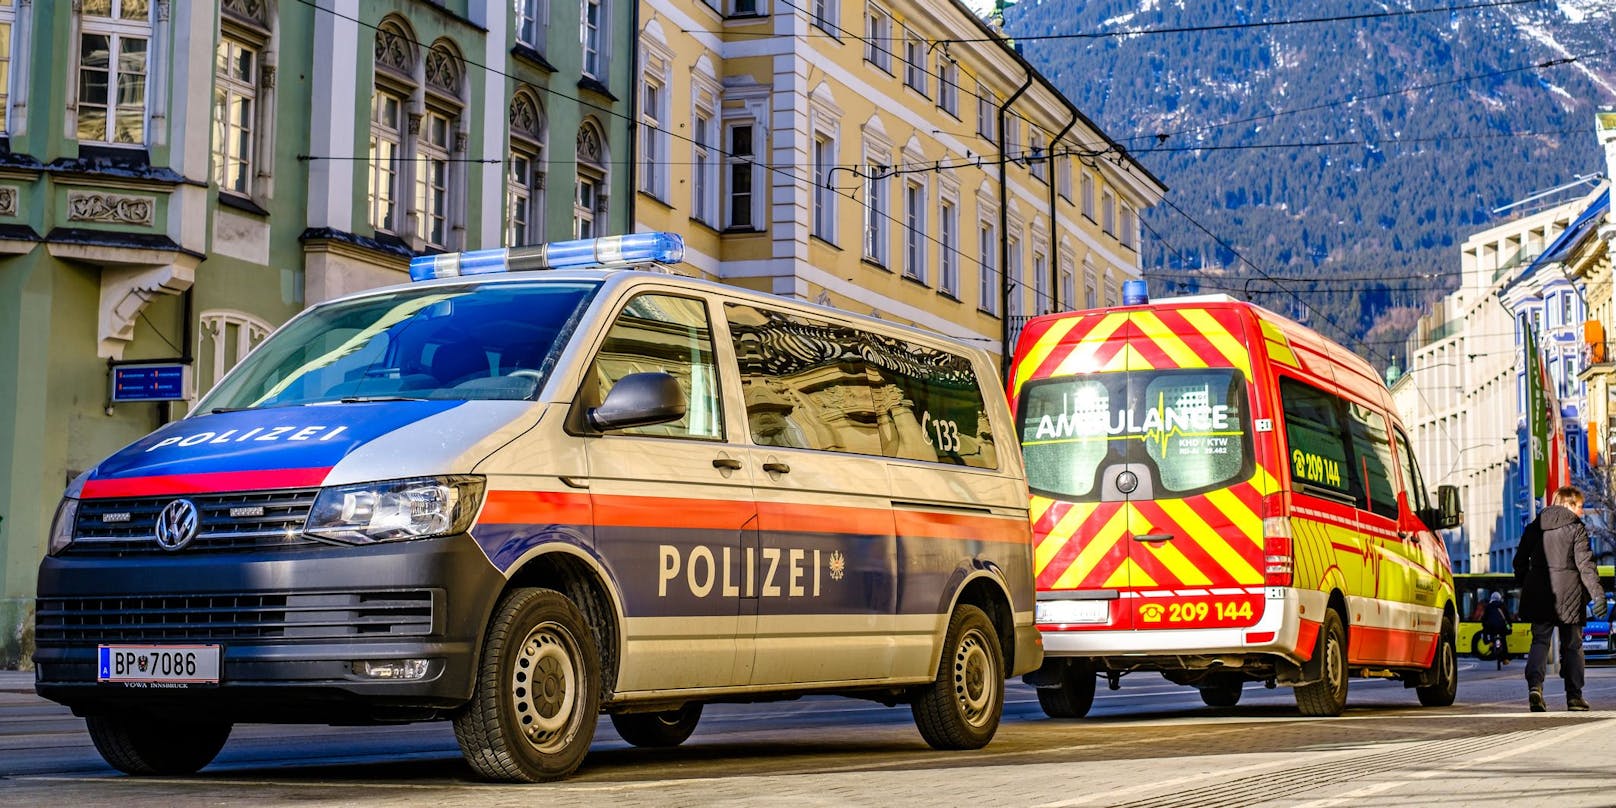 Die Innsbrucker Polizei konnte den gesuchten Mörder verhaften.